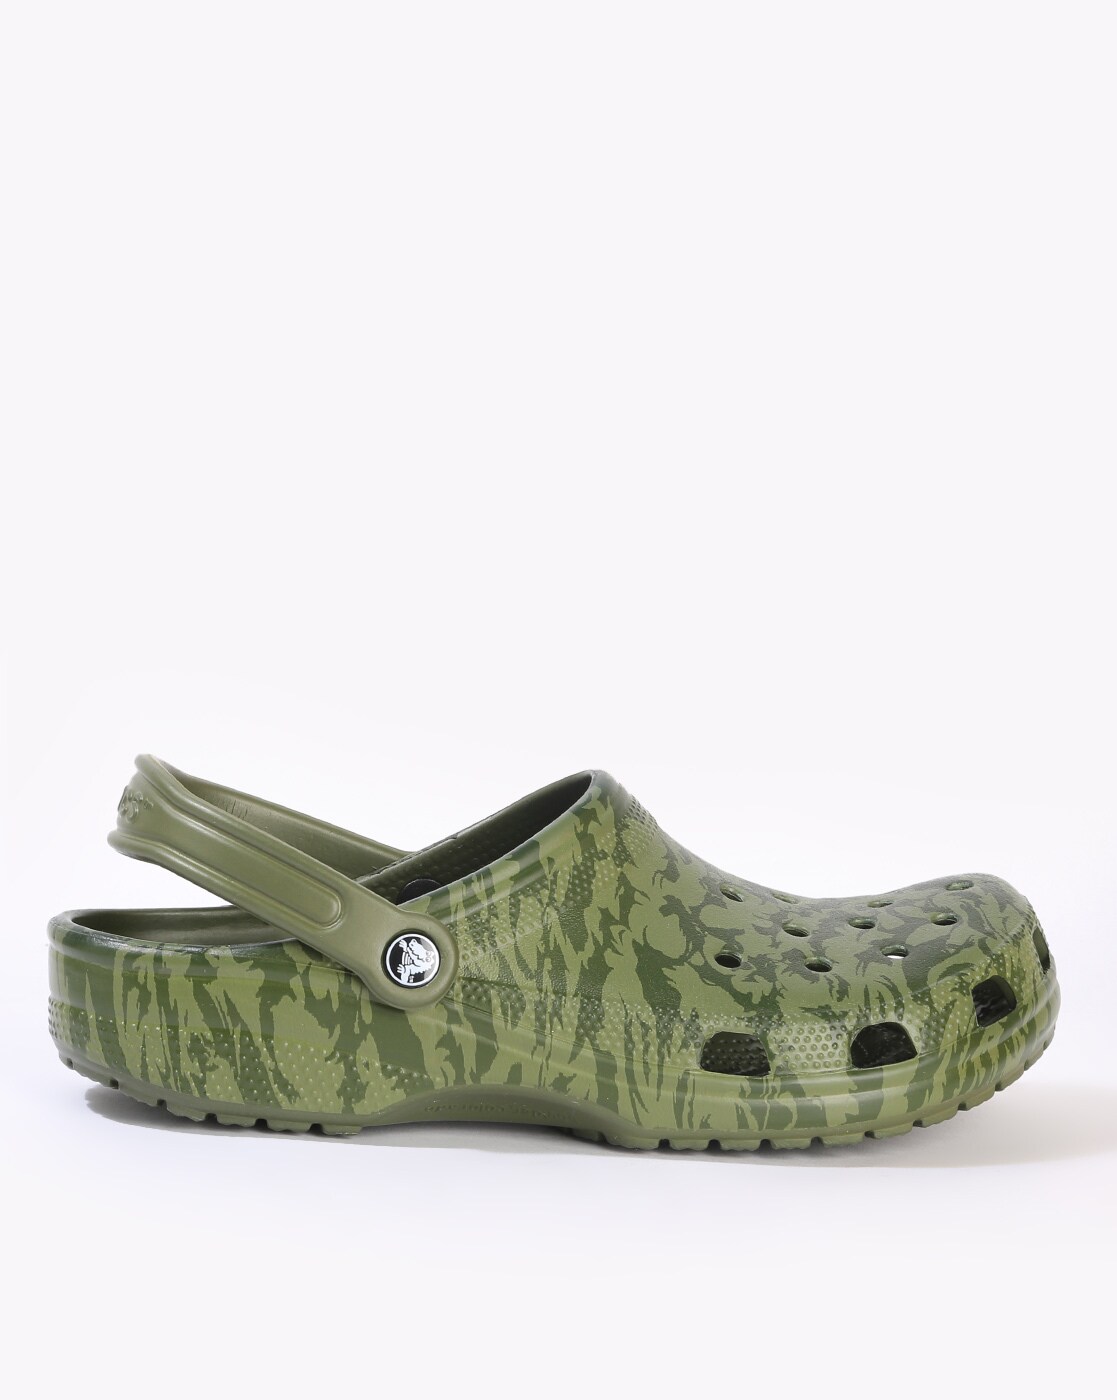 crocs veterans discount